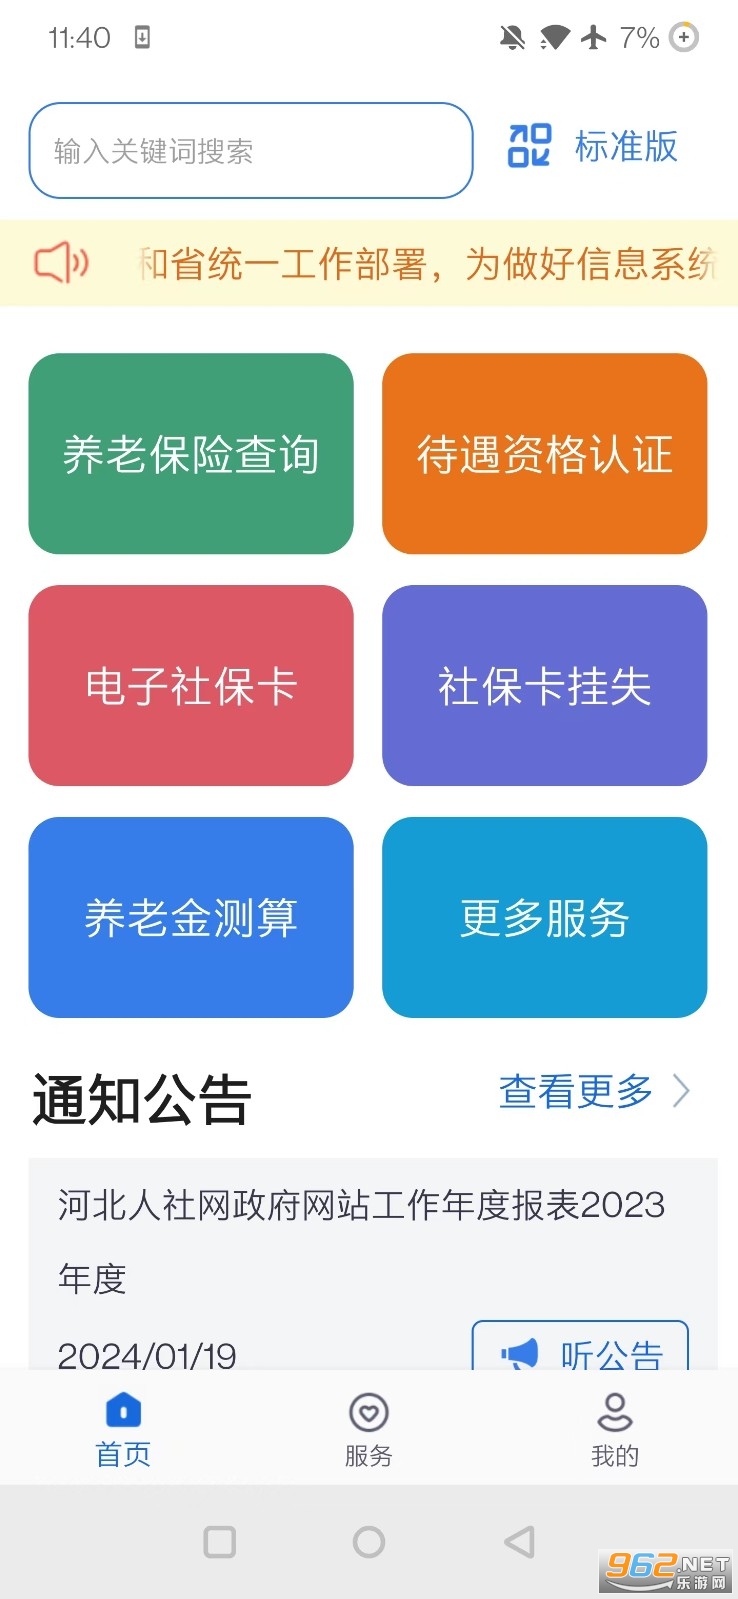 河北人社一体化公共服务平台